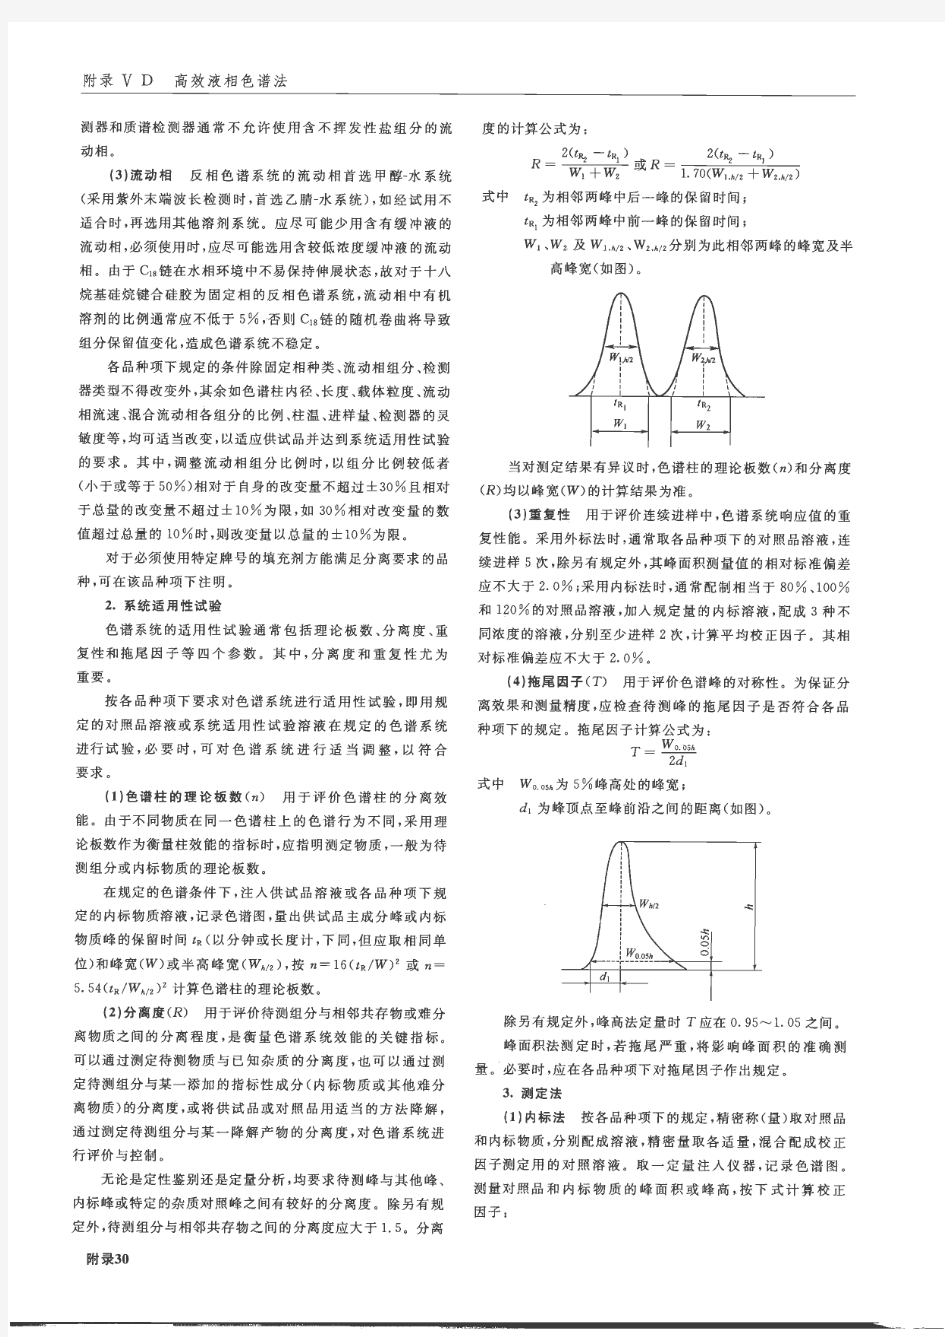 《中国药典》2010年版2部高效液相色谱法